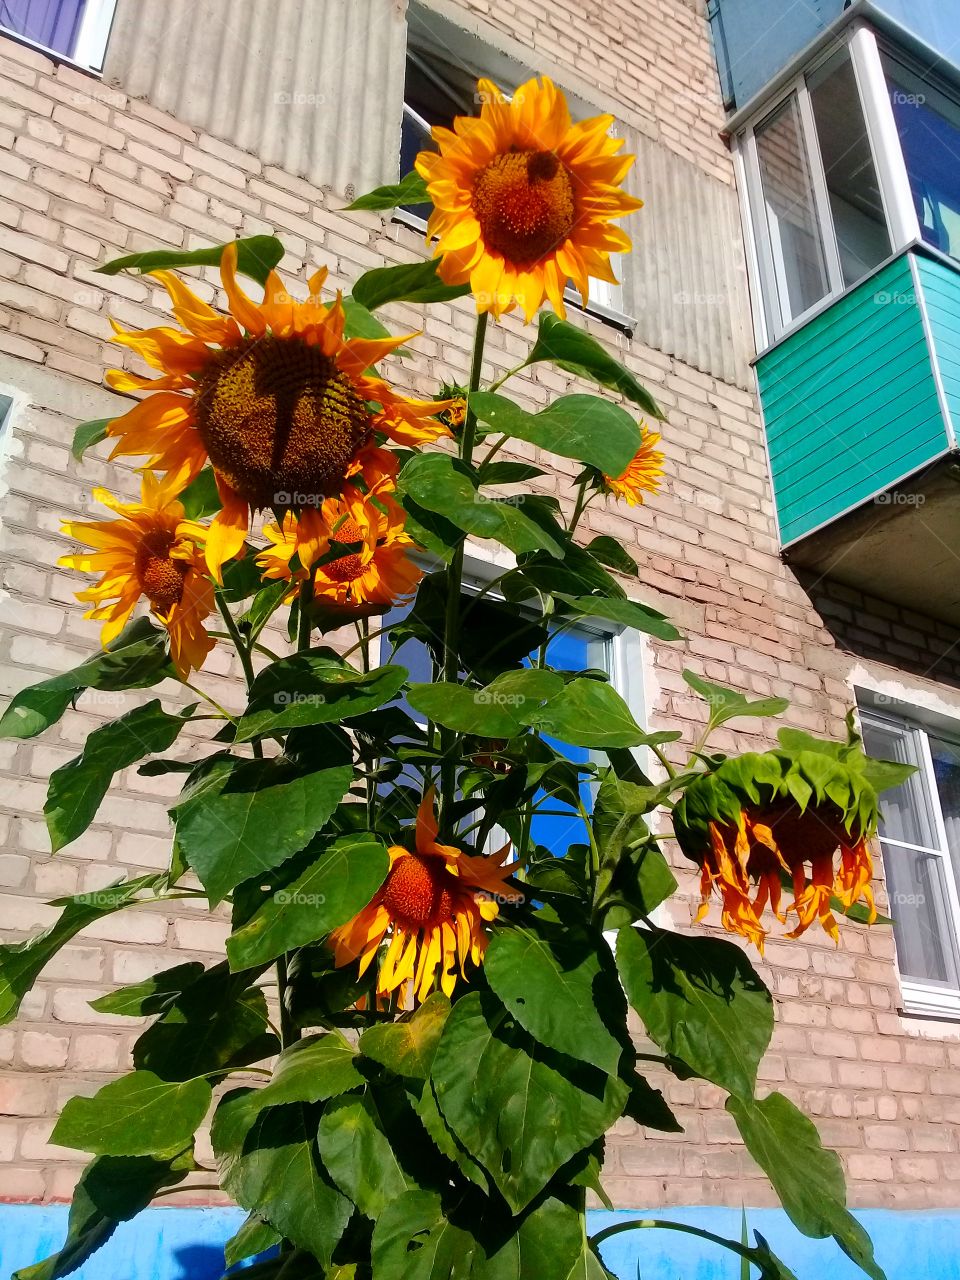 urban sunflower